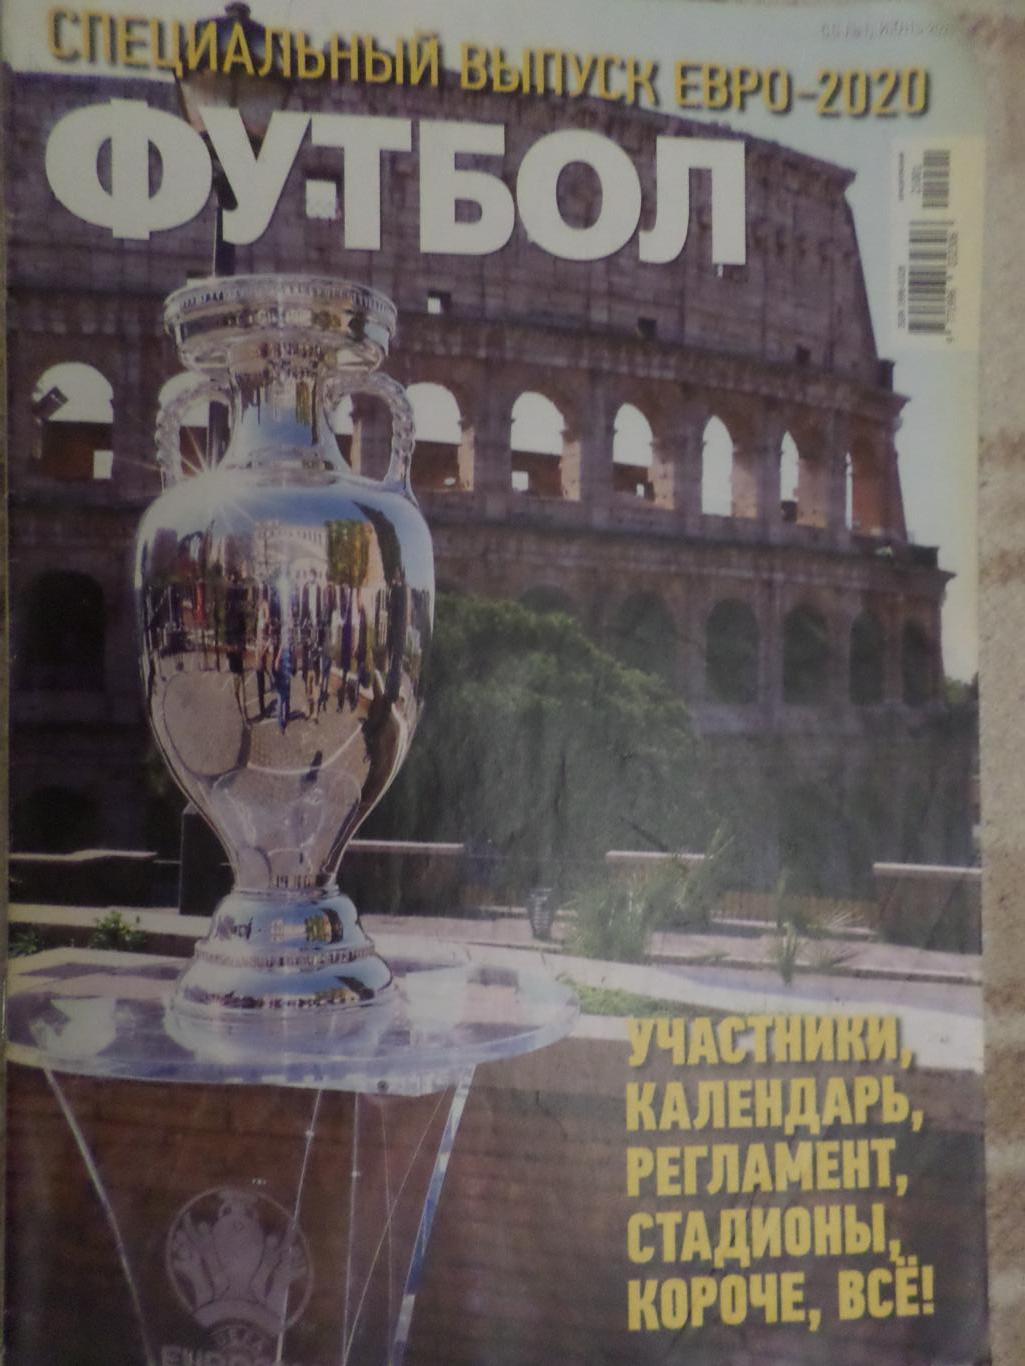 Еженедельник Футбол, Киев, спецвыпуск № 1 2020 год ЕВРО-2020